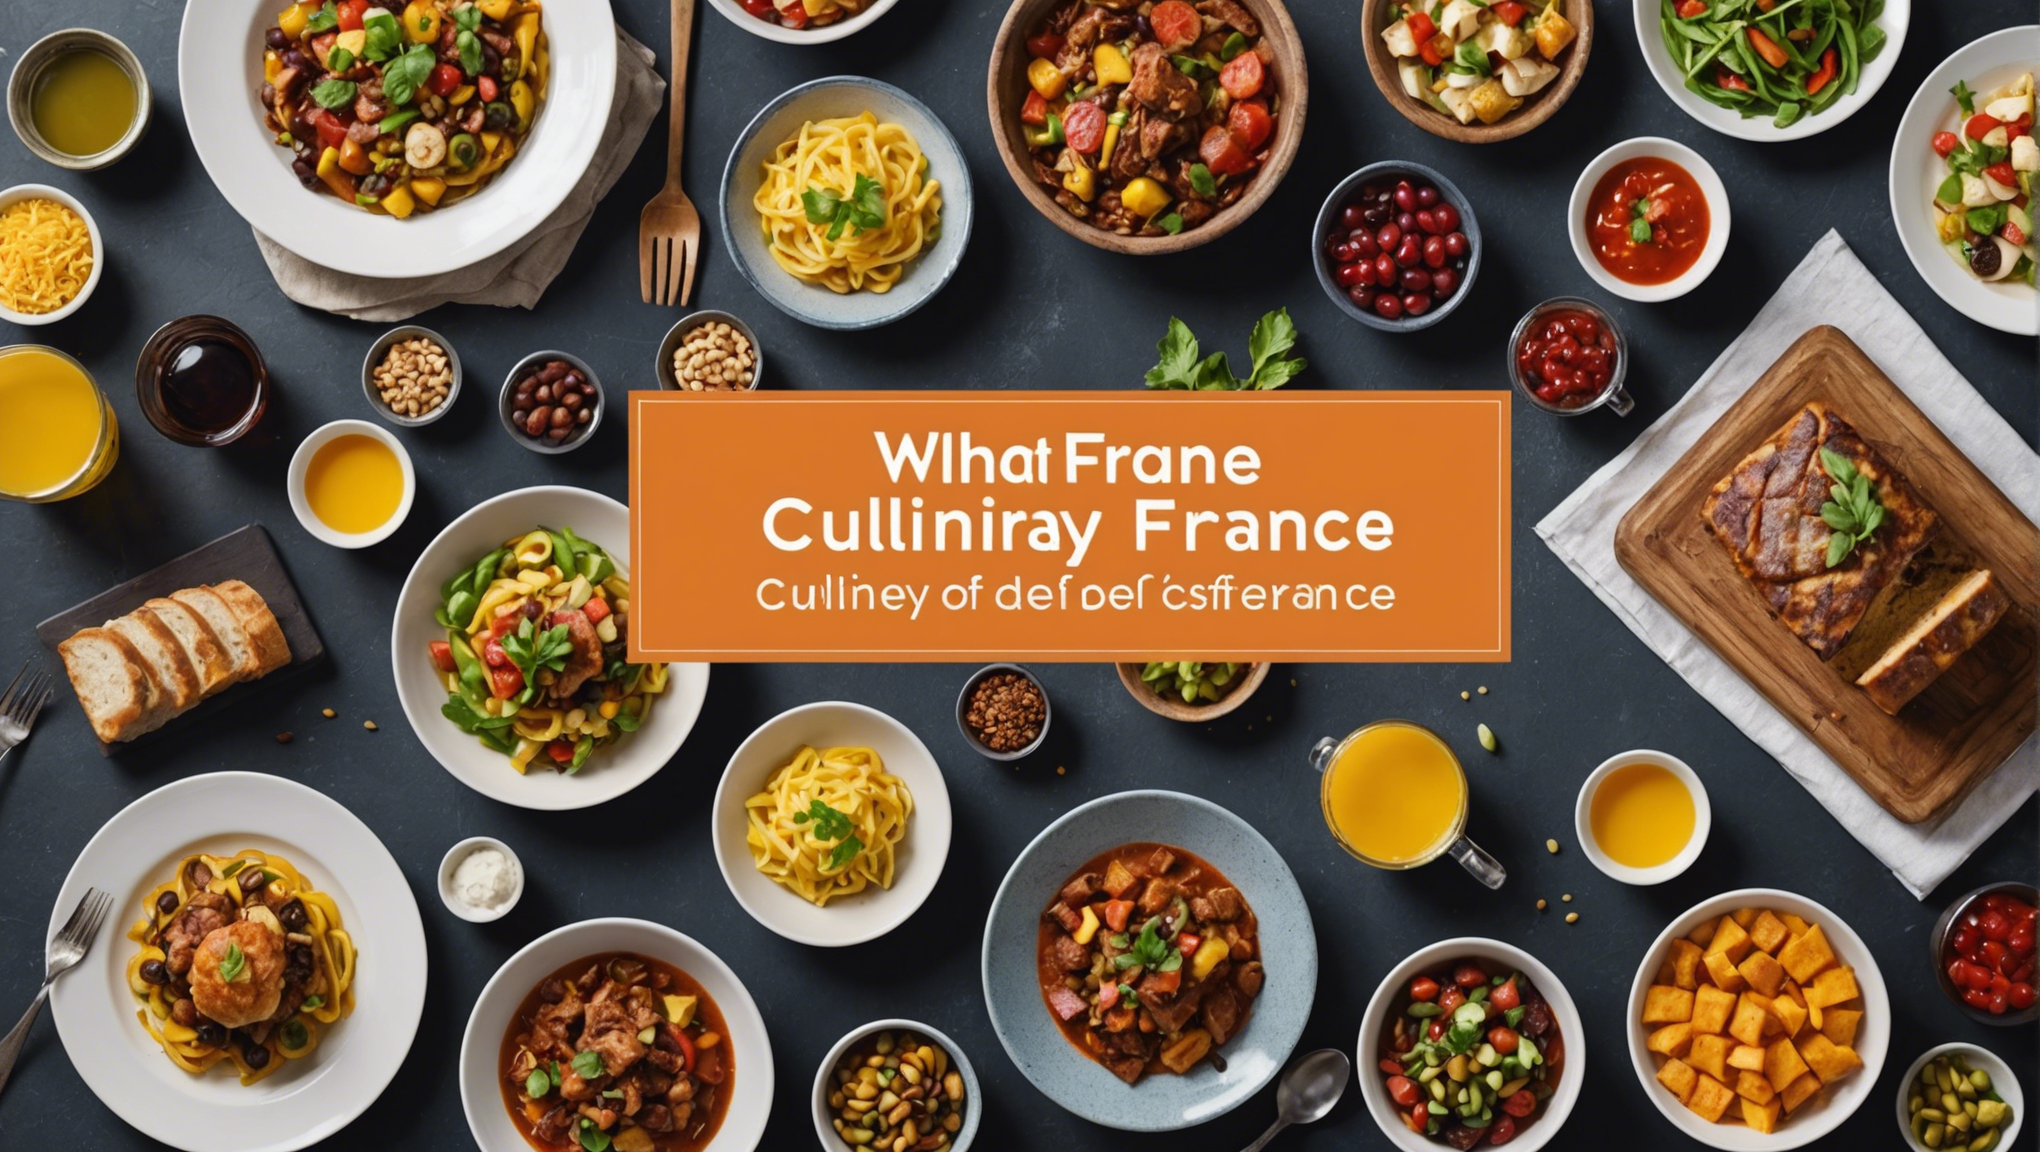 découvrez les spécialités culinaires incontournables de l'ile-de-france et laissez-vous séduire par la gastronomie raffinée de la région parisienne.